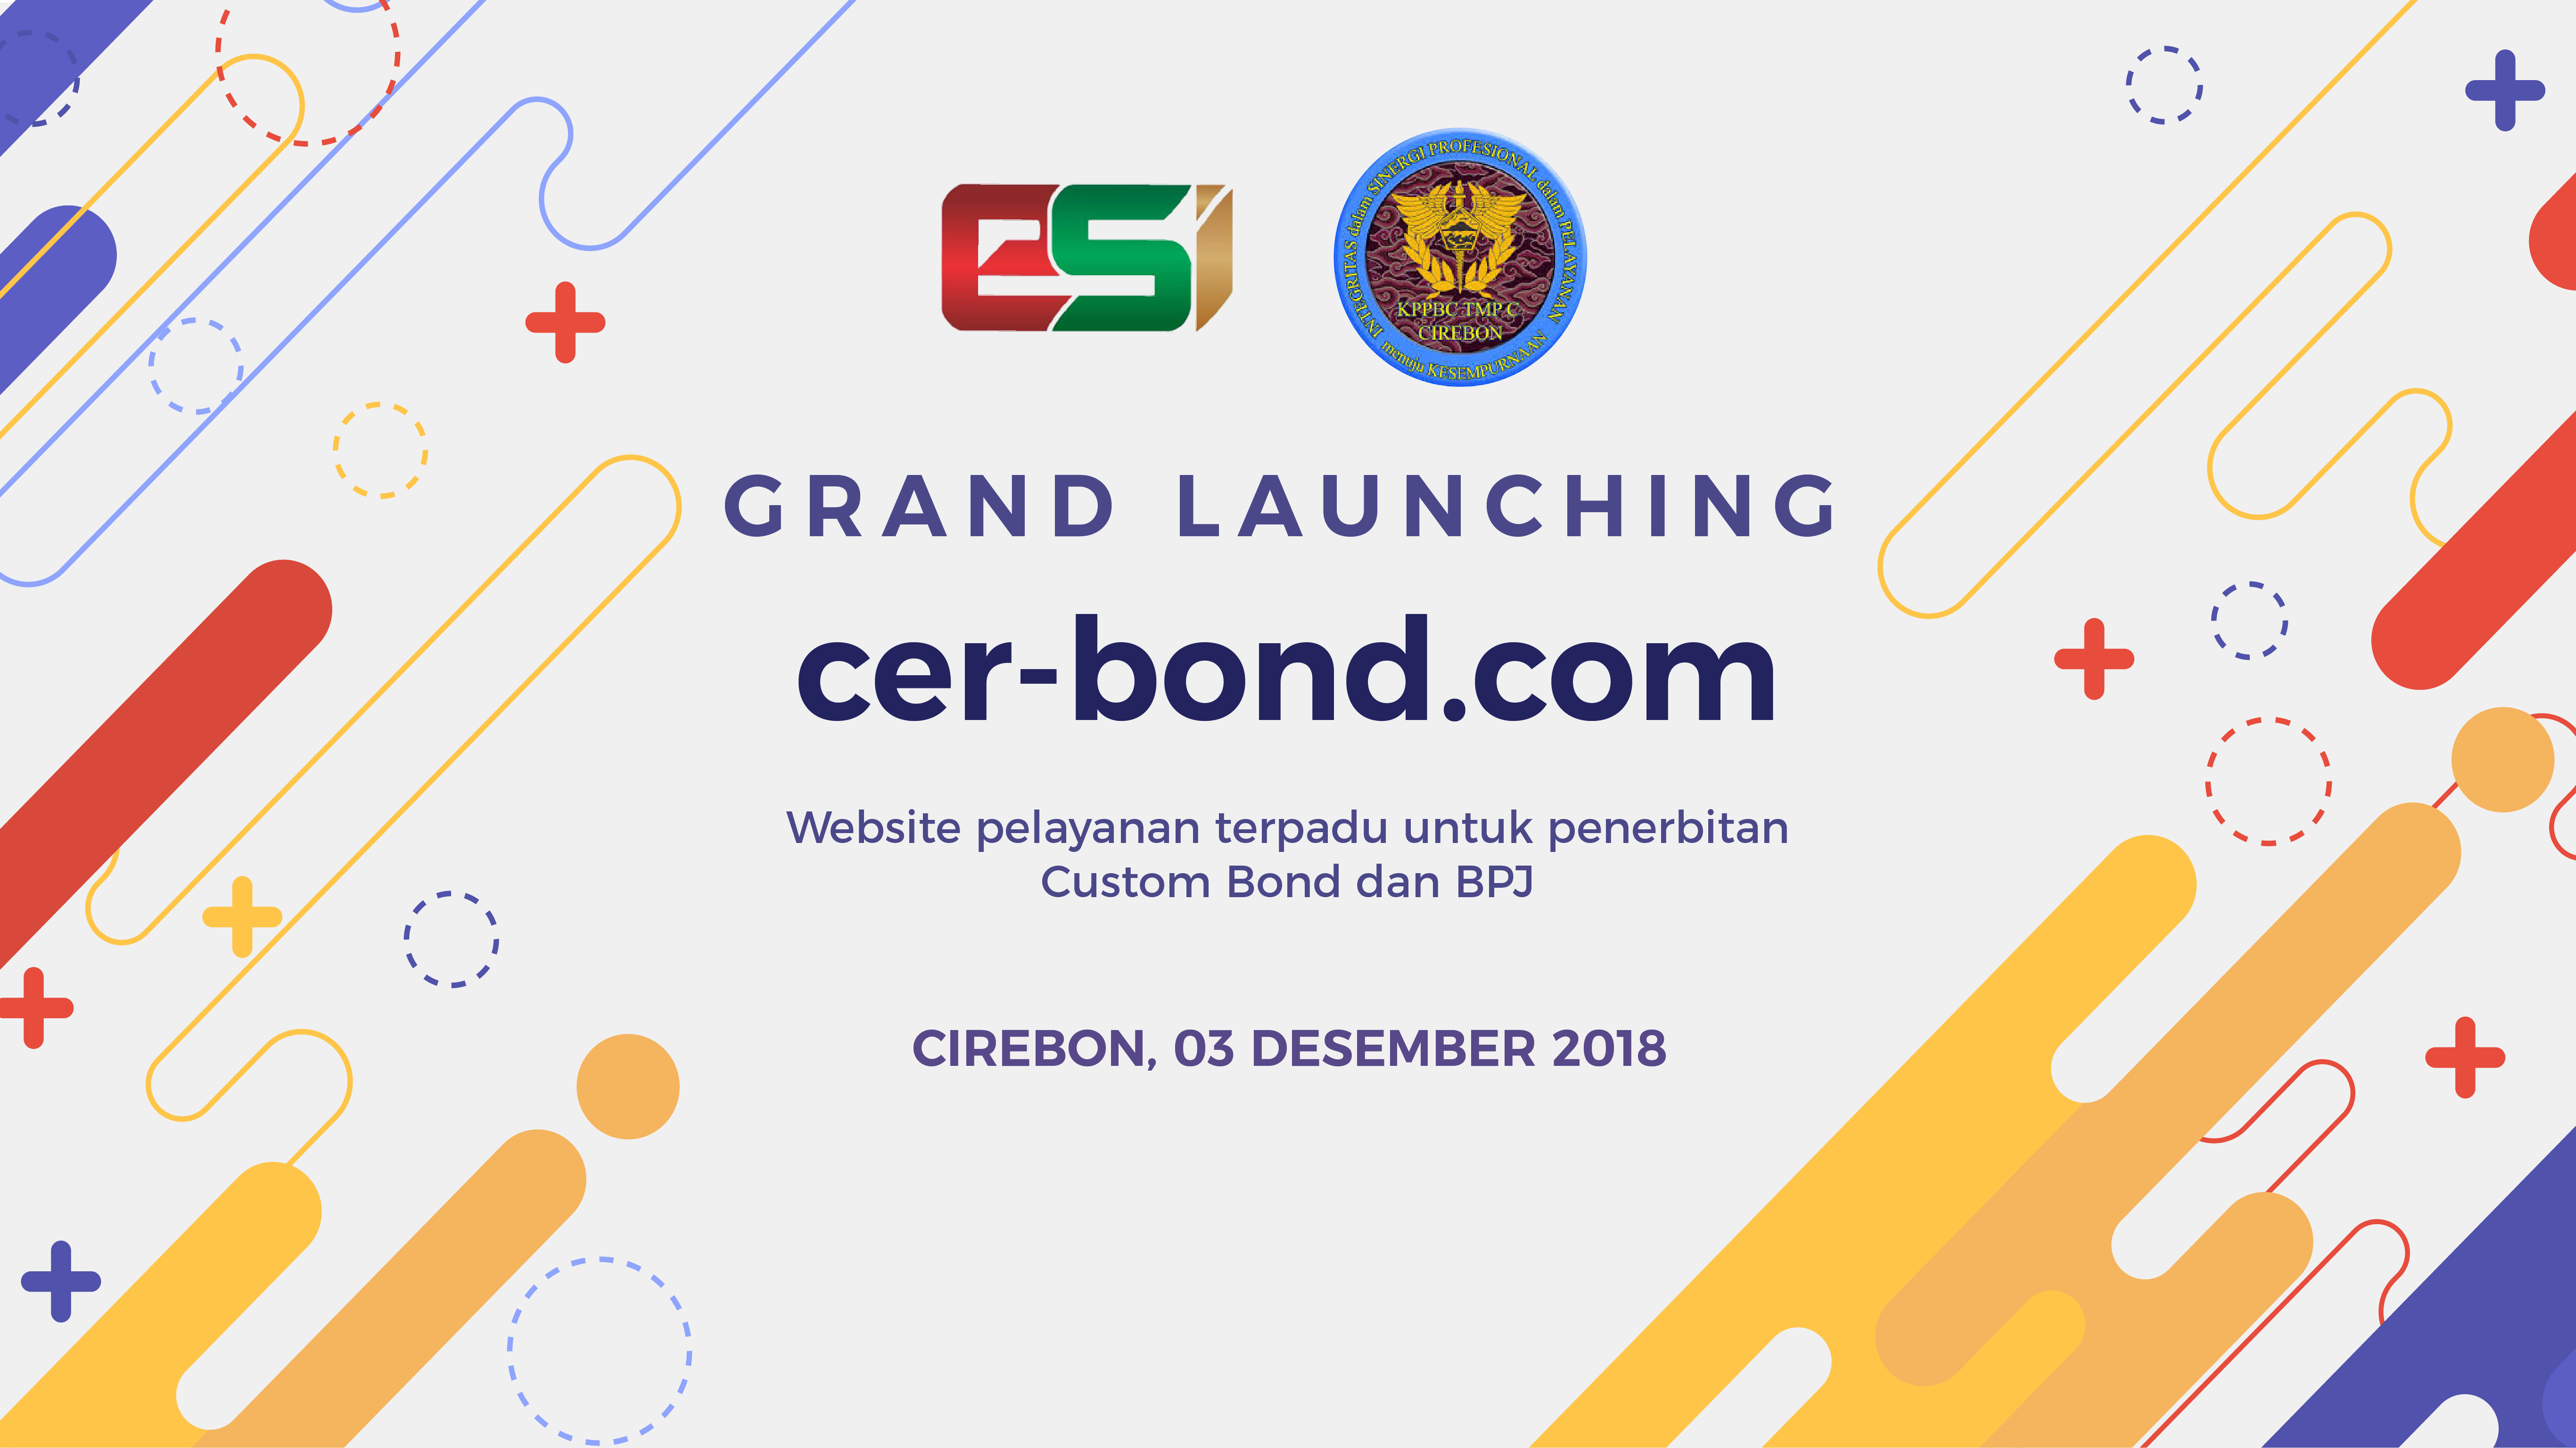 Penerapan aplikasi cer-bond dengan Bea Cukai Cirebon